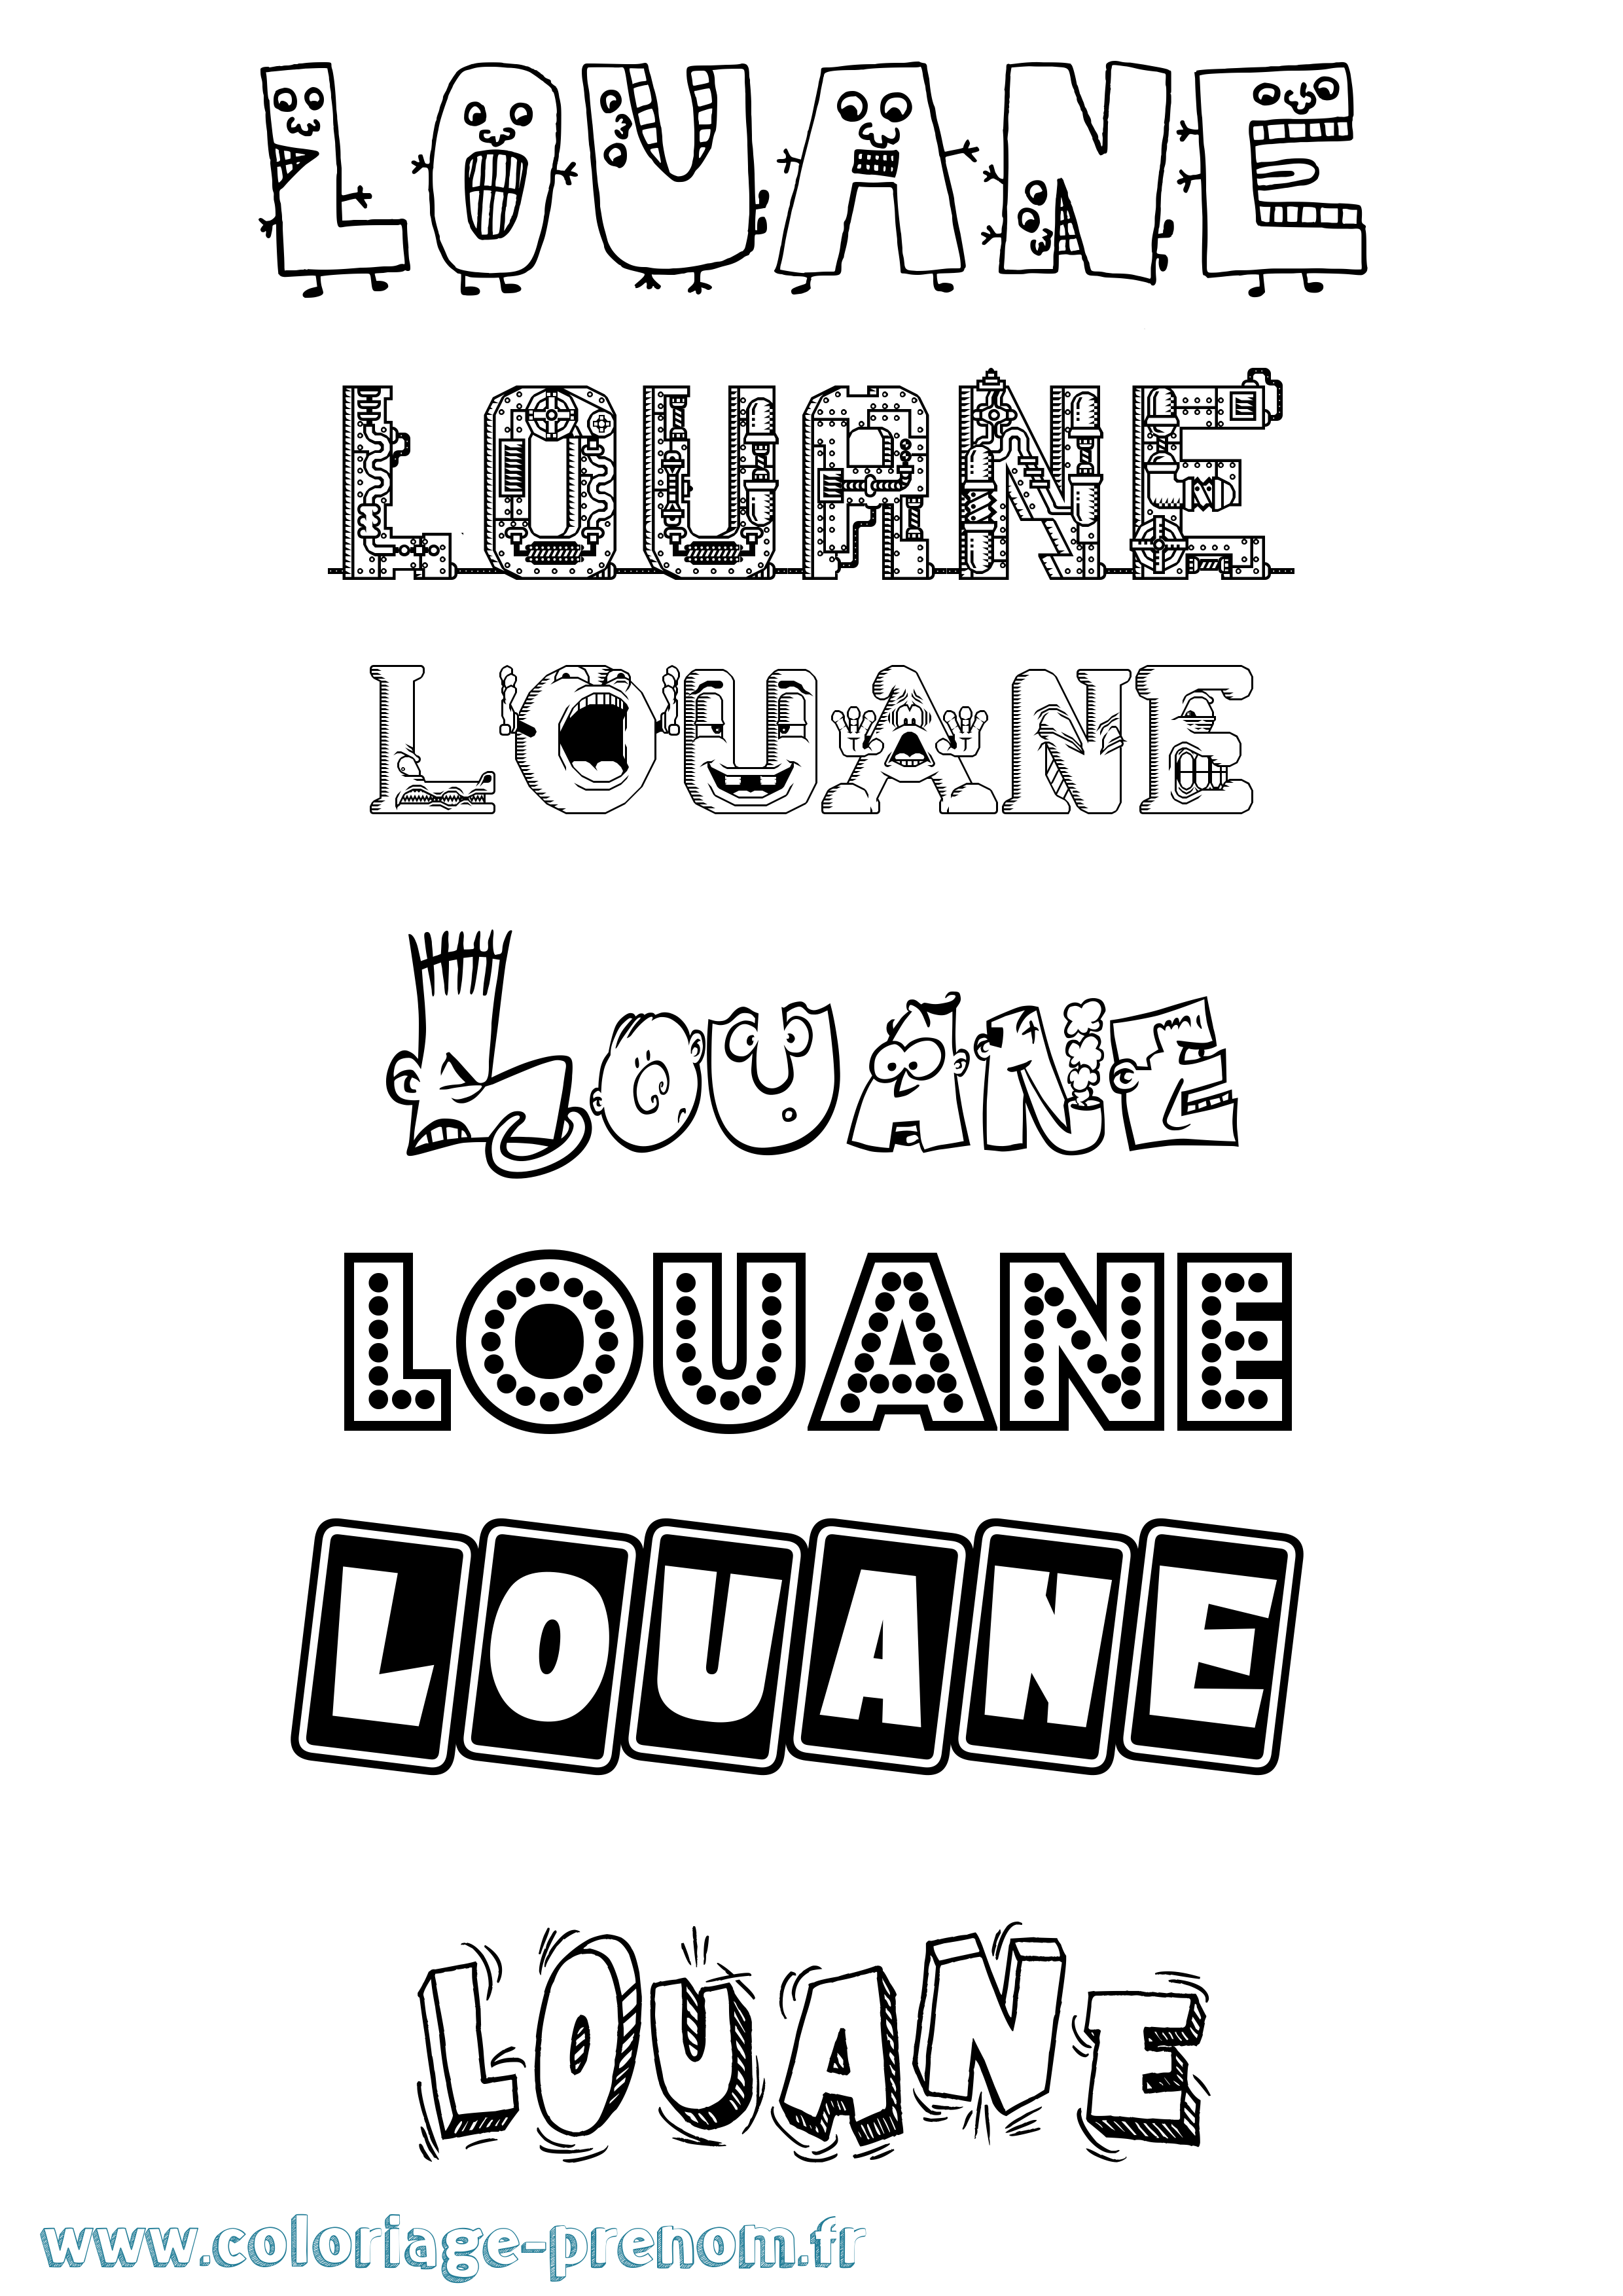 Coloriage prénom Louane Fun